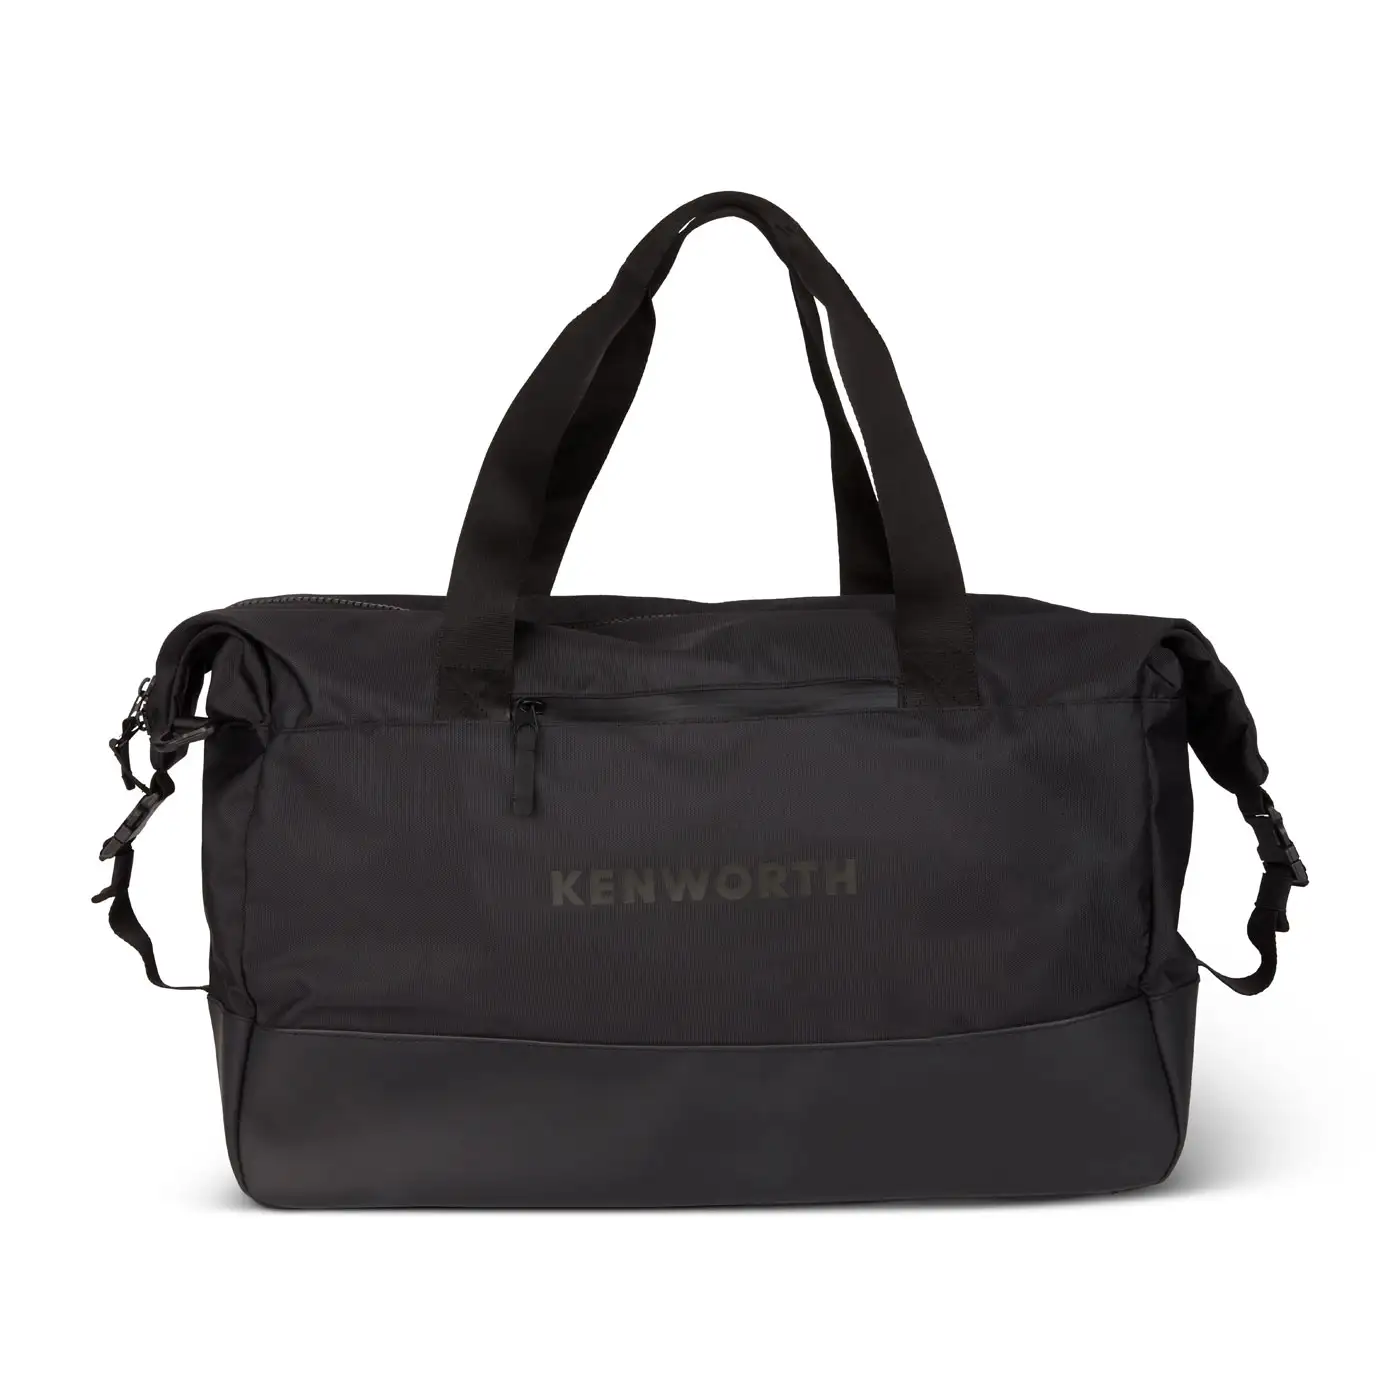 All Black Kenworth Duffel Bag